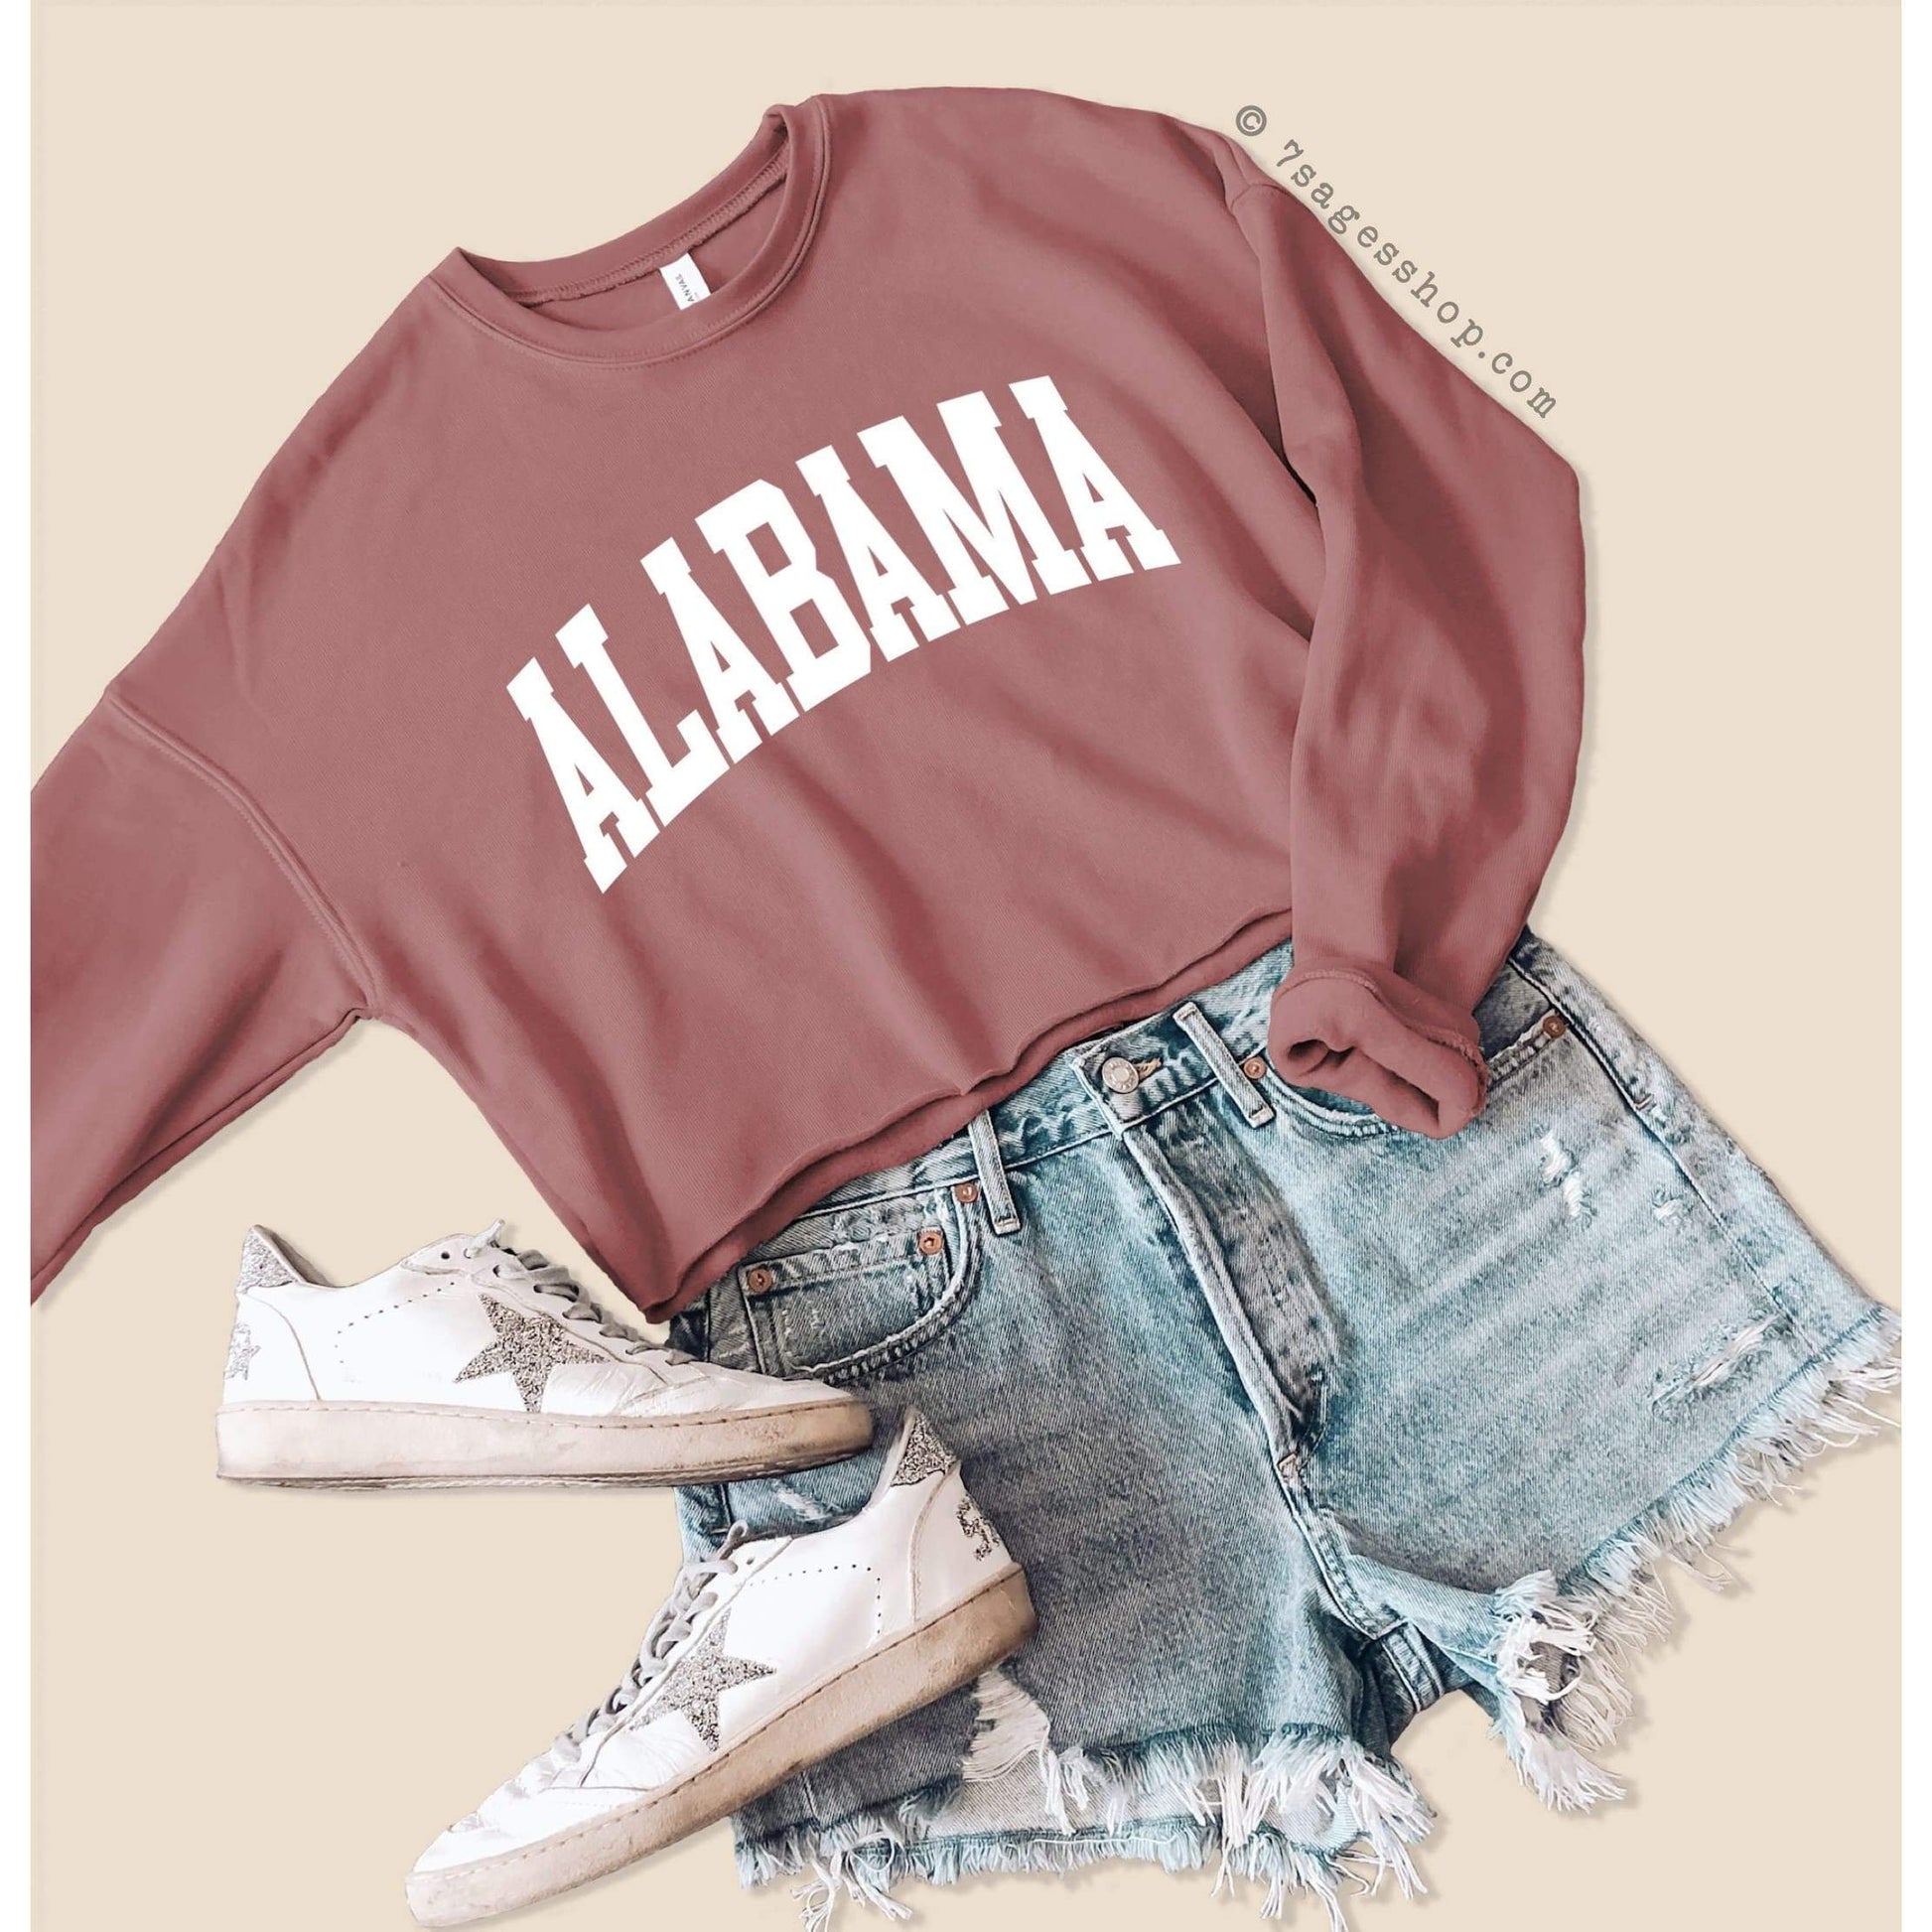 Alabama Cropped Sweatshirt - Alabama Sweatshirt - Alabama Shirts - University of Alabama Crop Top - Fleece Sweatshirt